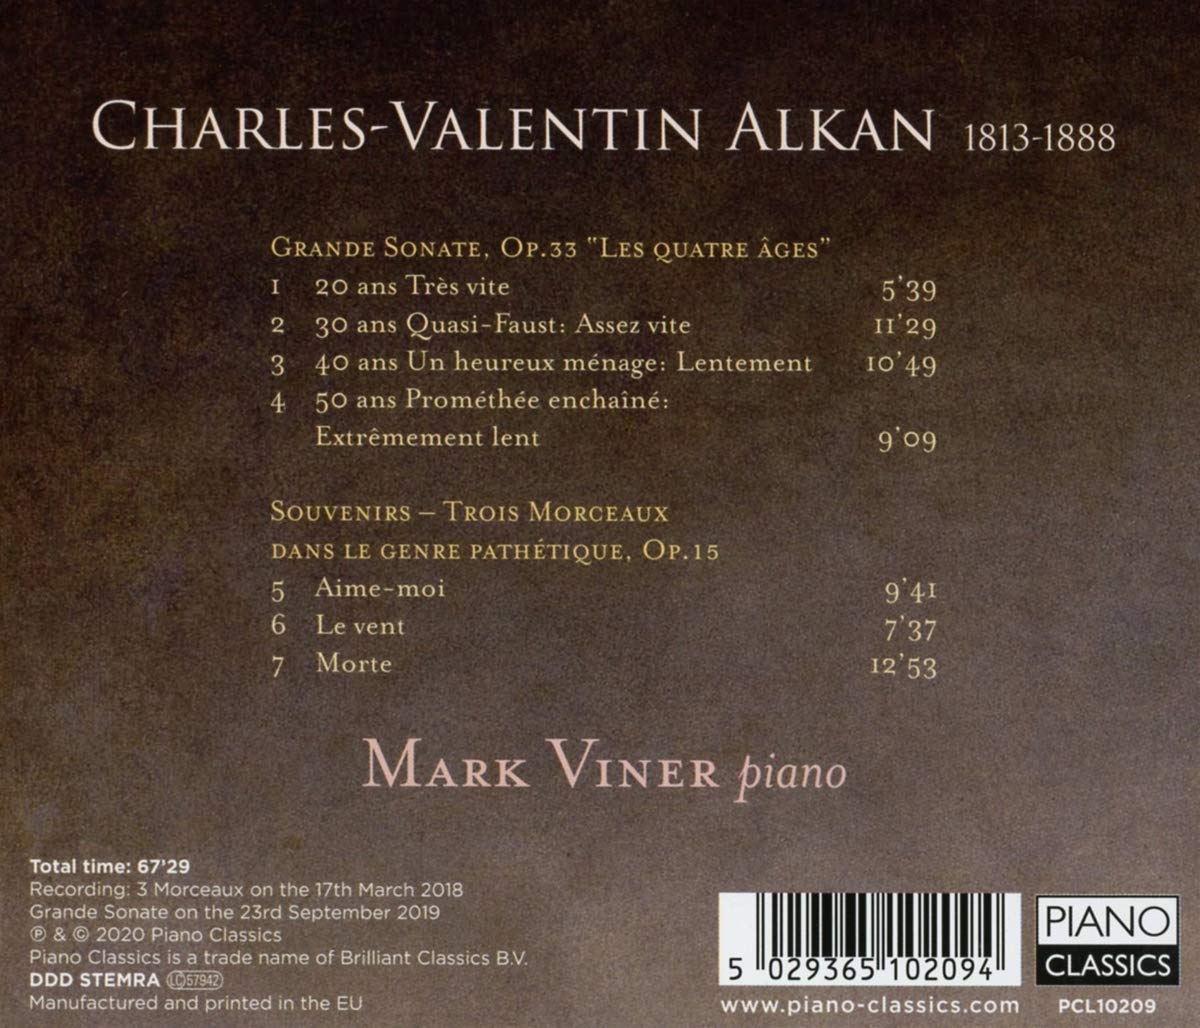 Mark Viner 알캉: 그랜드 소나타, 4개의 세대, 죽음 (Alkan: Grande Sonata, Trois Morceaux dans le genre pathetique